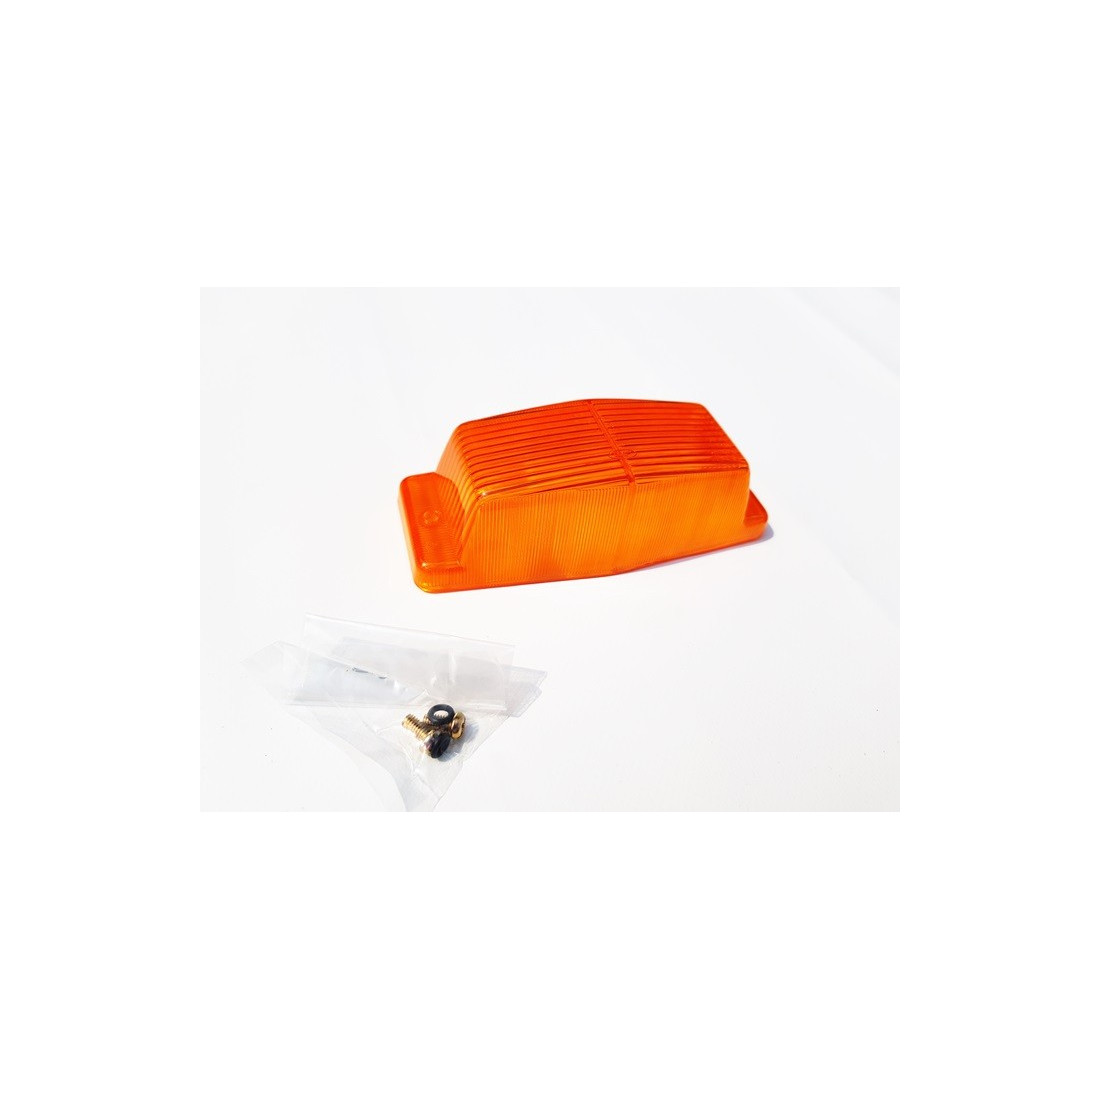 Glass Orange DOUBLE BURNER / Doppelbrenner Lampenschirm